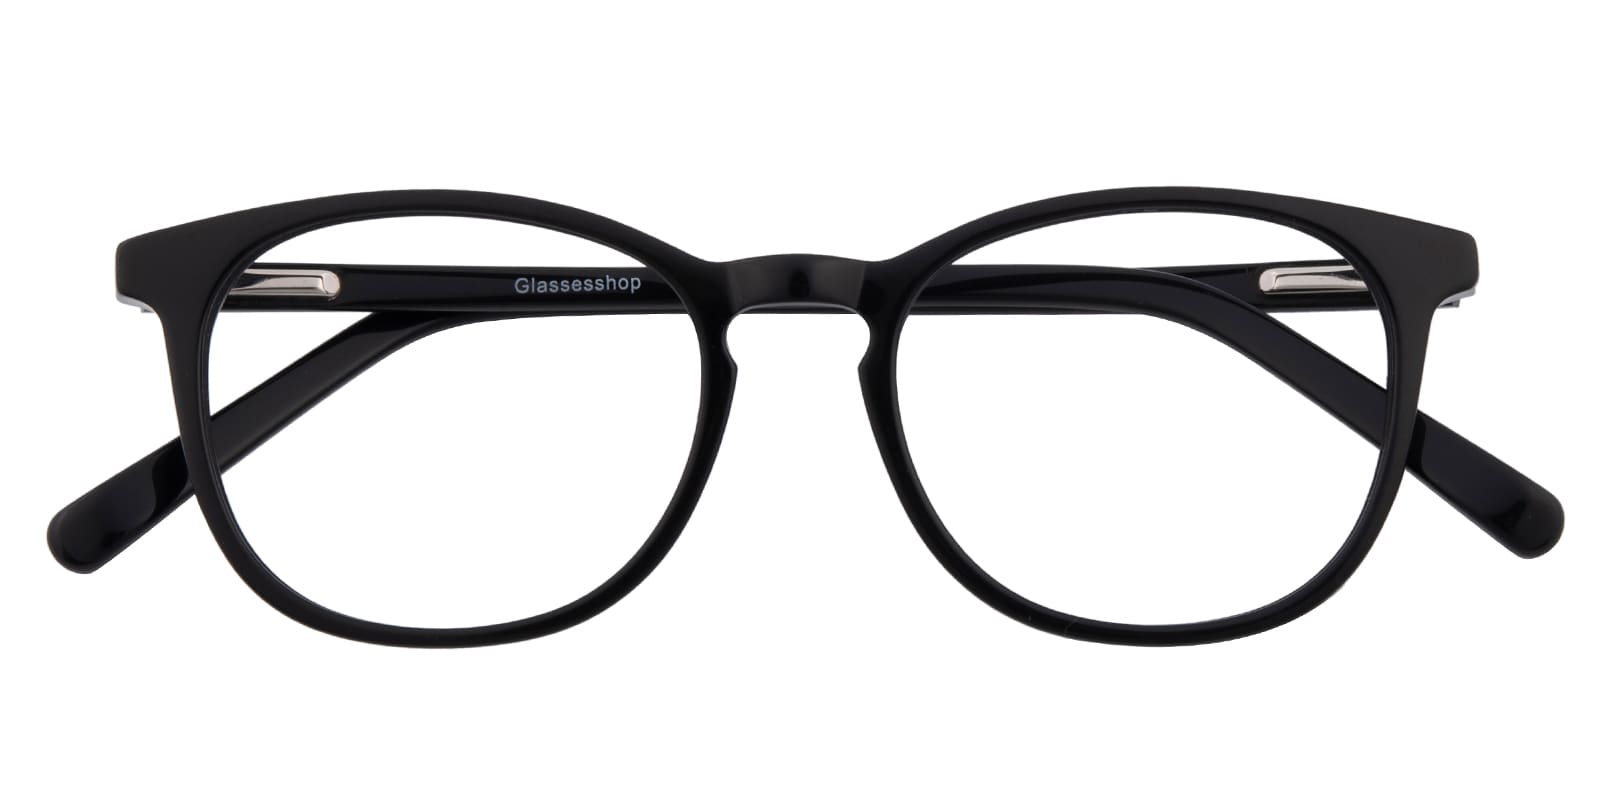 Round Eyeglasses, Full Frame Black Plastic - FZ2019